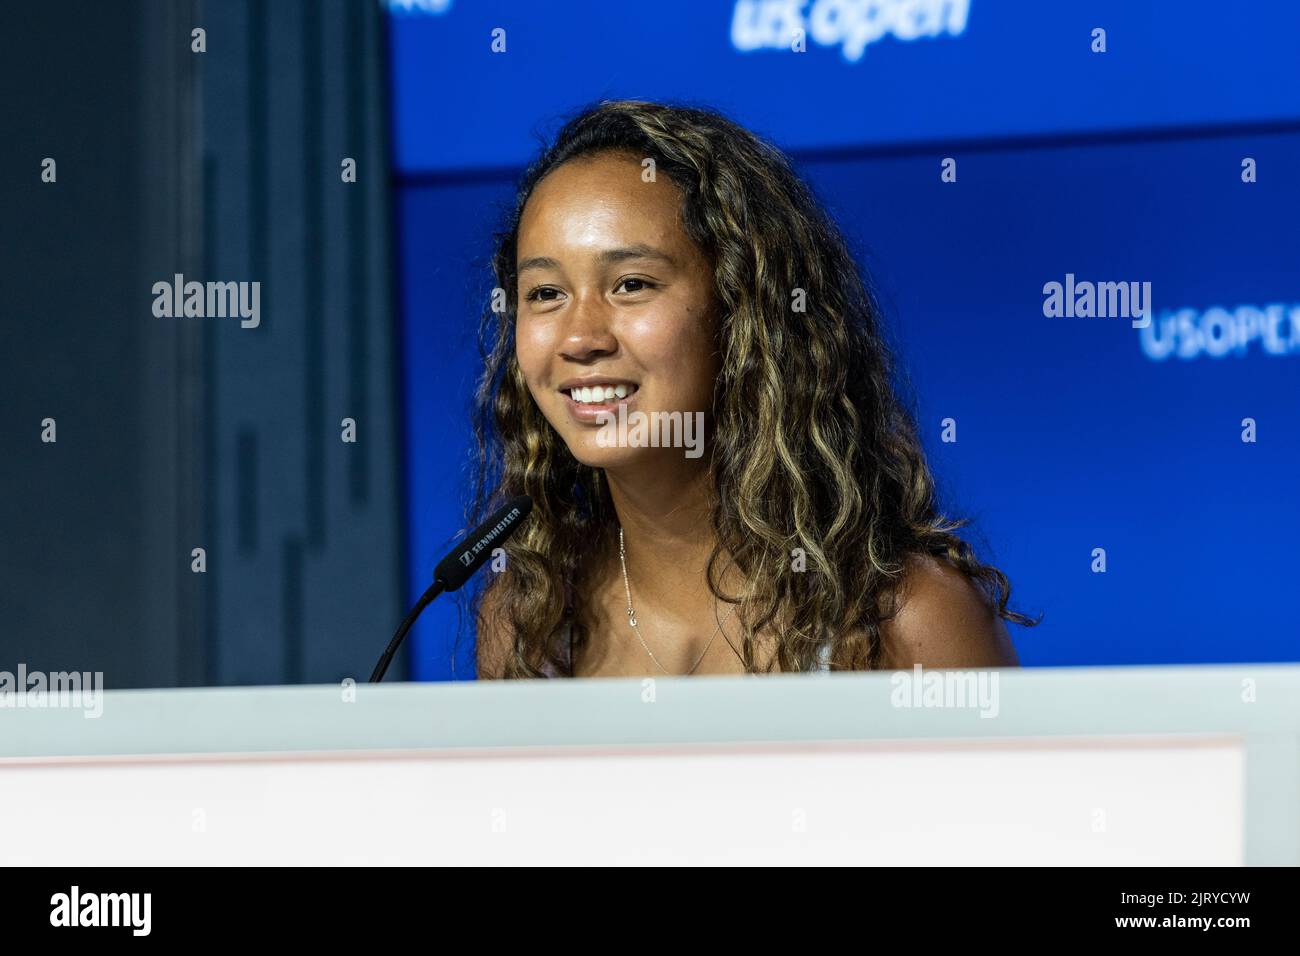 New York, NY - 26 août 2022: Leylah Fernandez du Canada assiste aux États-Unis Open Player Media Day disponibilité au centre de presse du Centre national de tennis de l'USTA Billie Jean King Banque D'Images